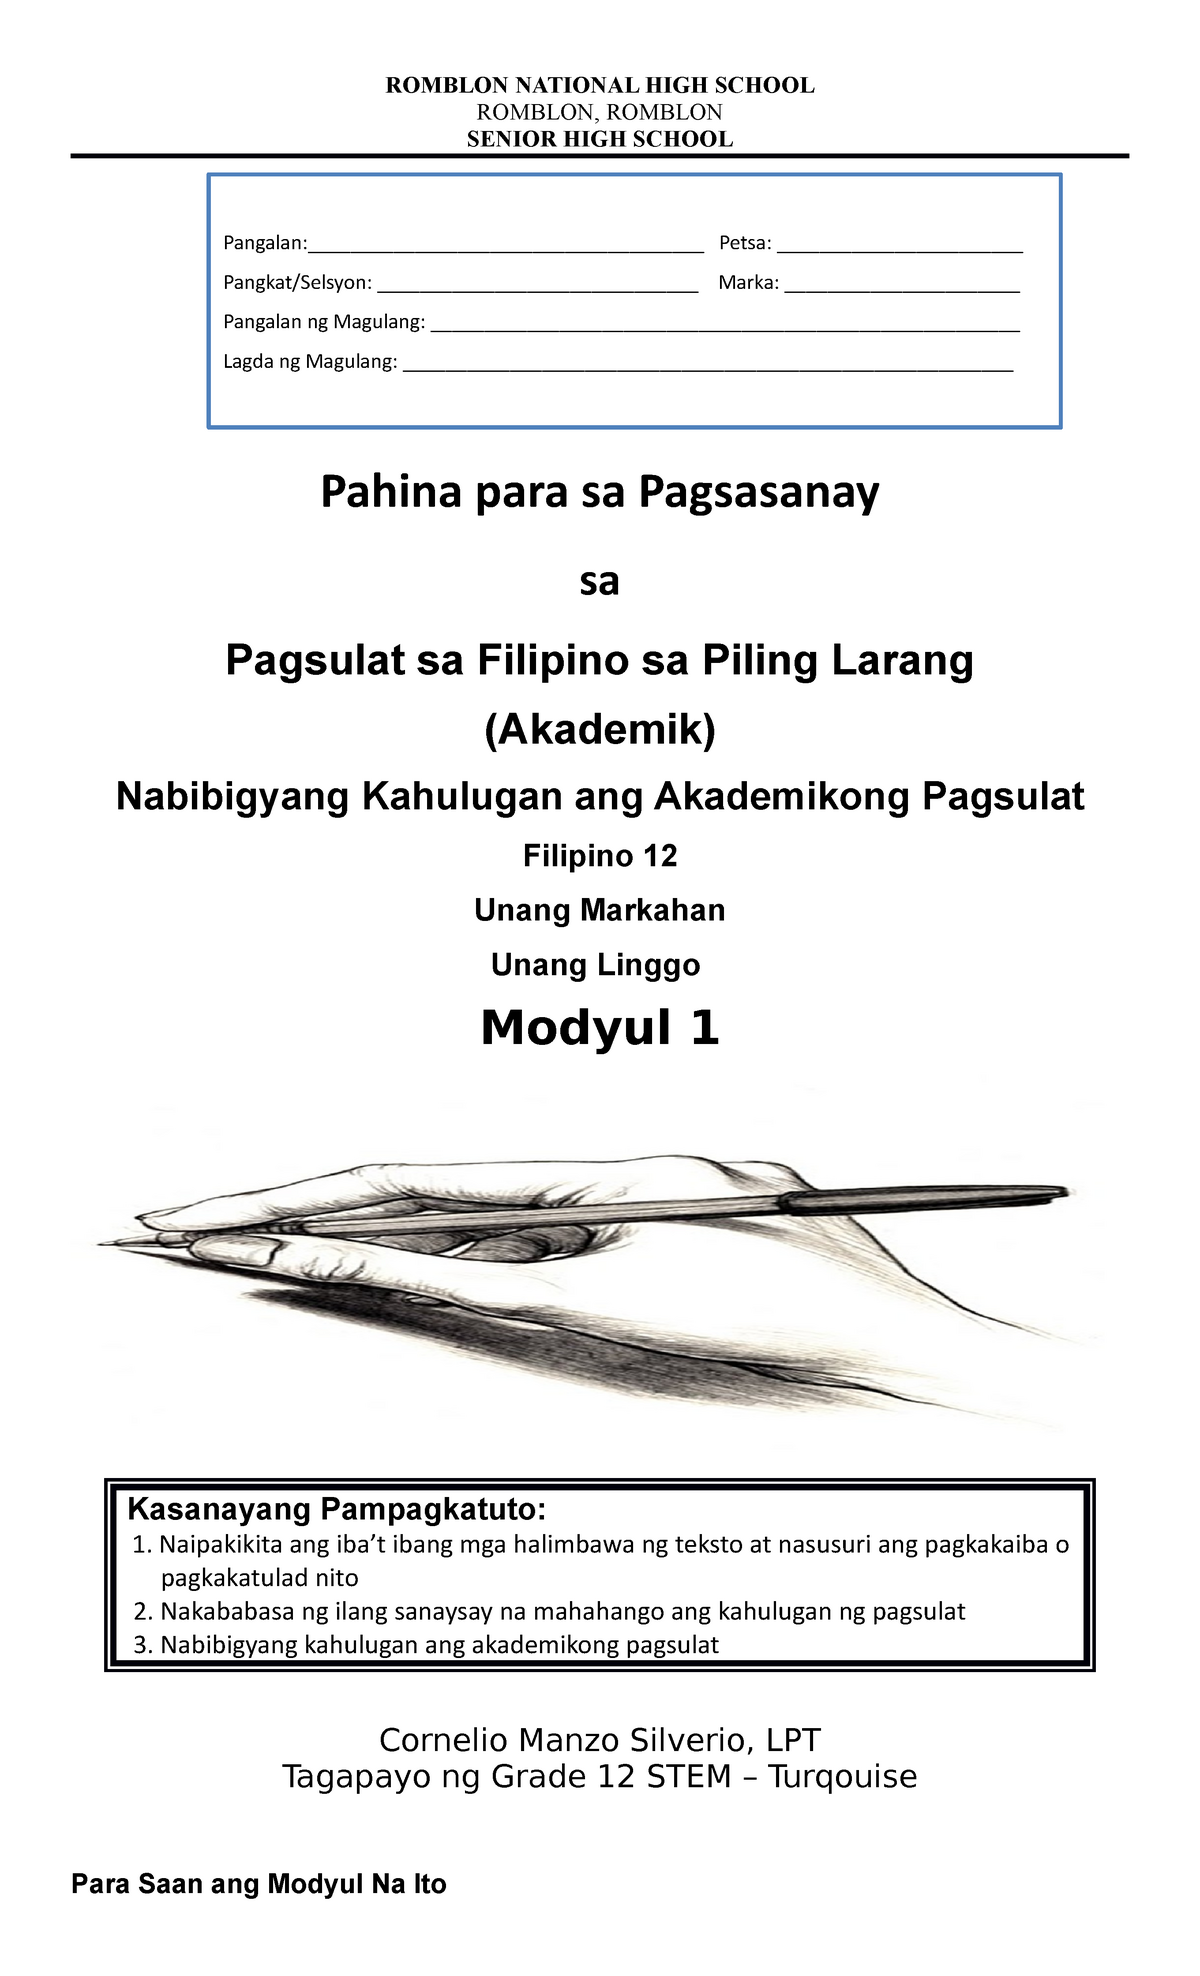 Pagsulat sa Filipino sa Piling Larang 1 - StuDocu